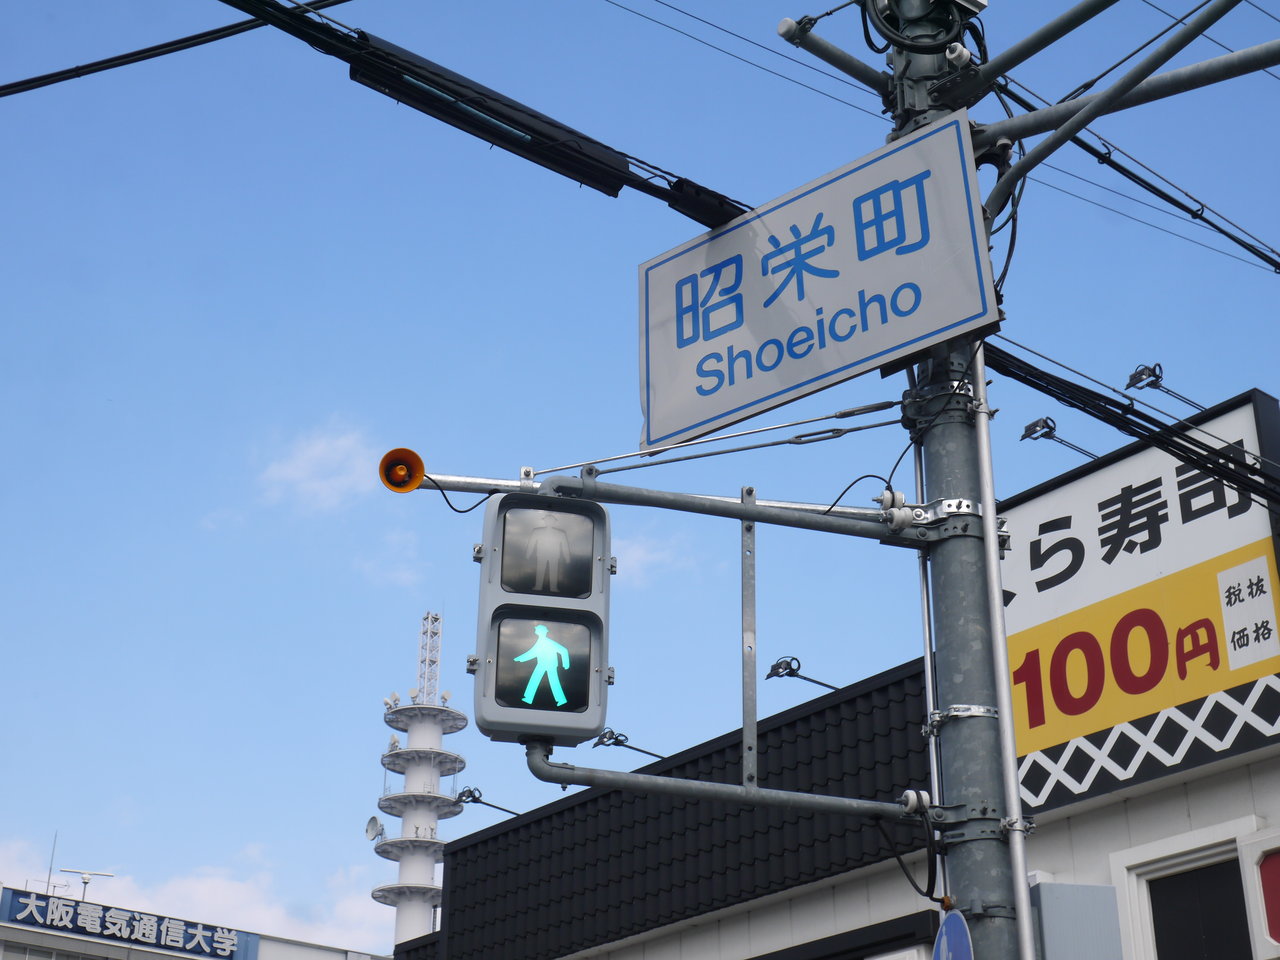 昭栄町交差点の信号に視覚障害者用の音声装置がつくみたい 寝屋川つーしん